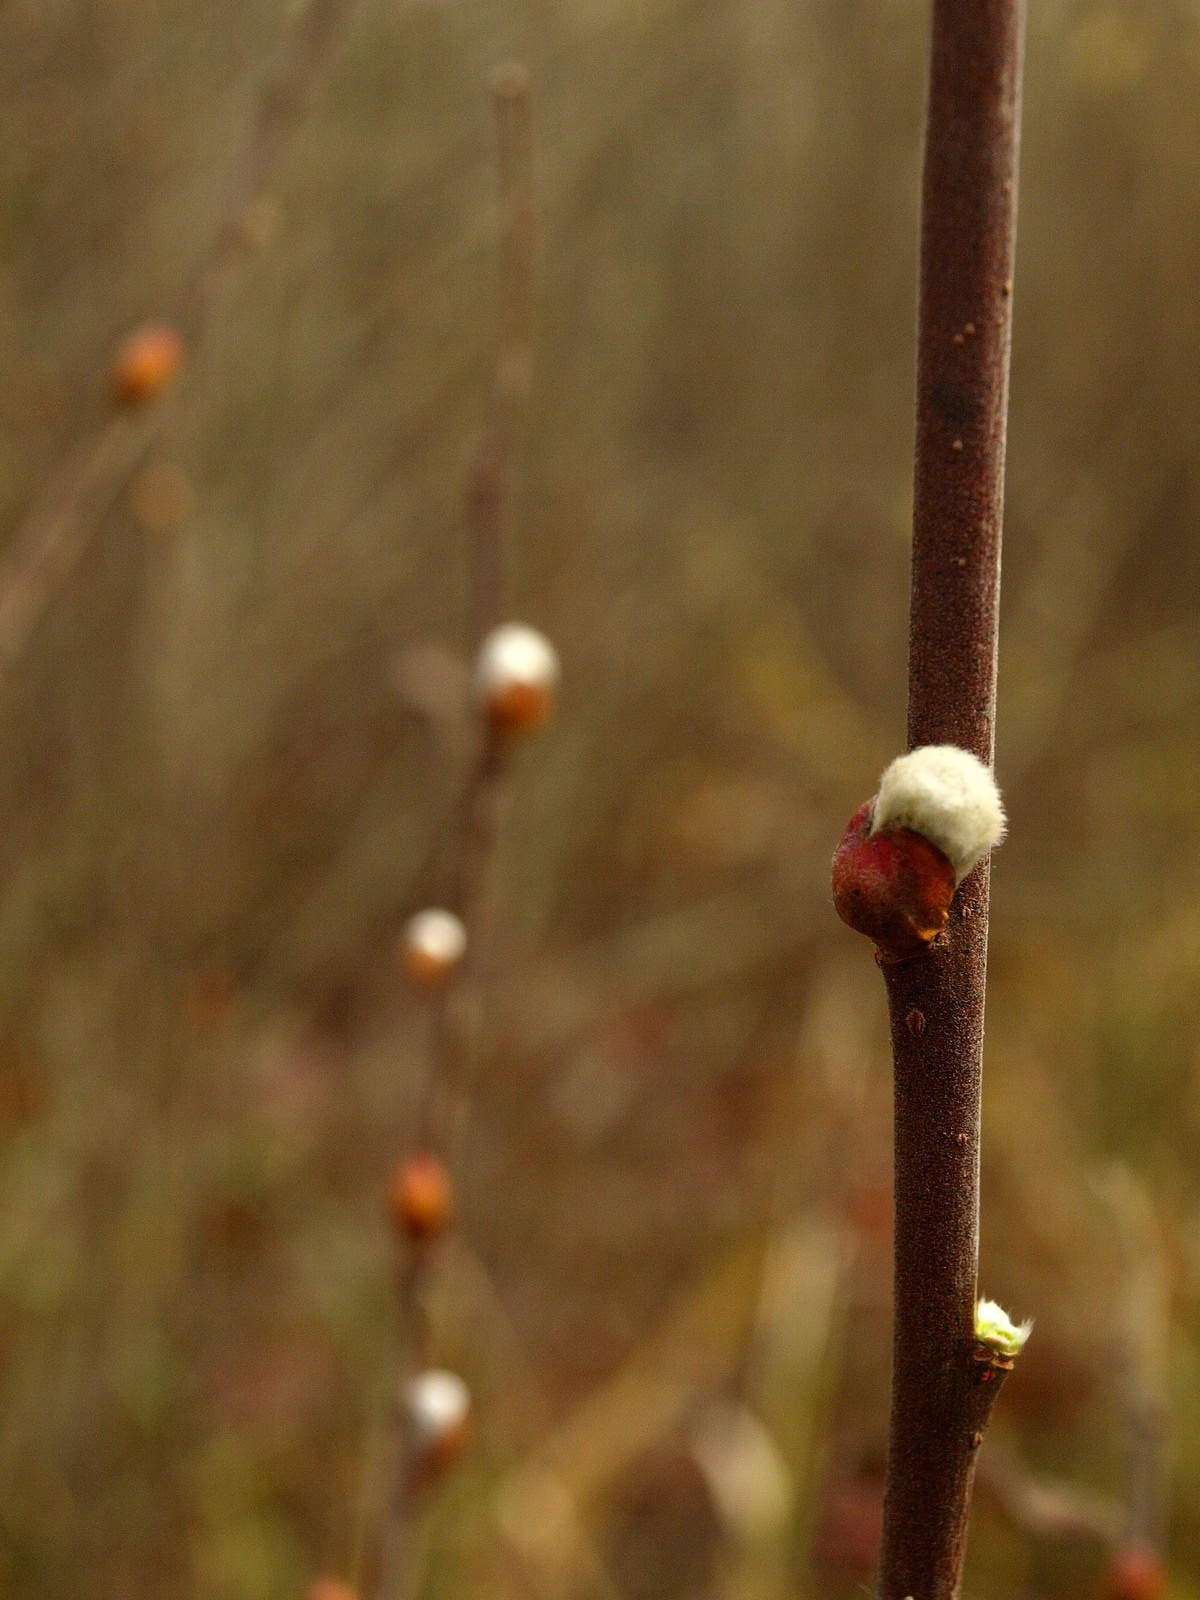 Hamvas fűz (Salix cinerea) megpattant rügye